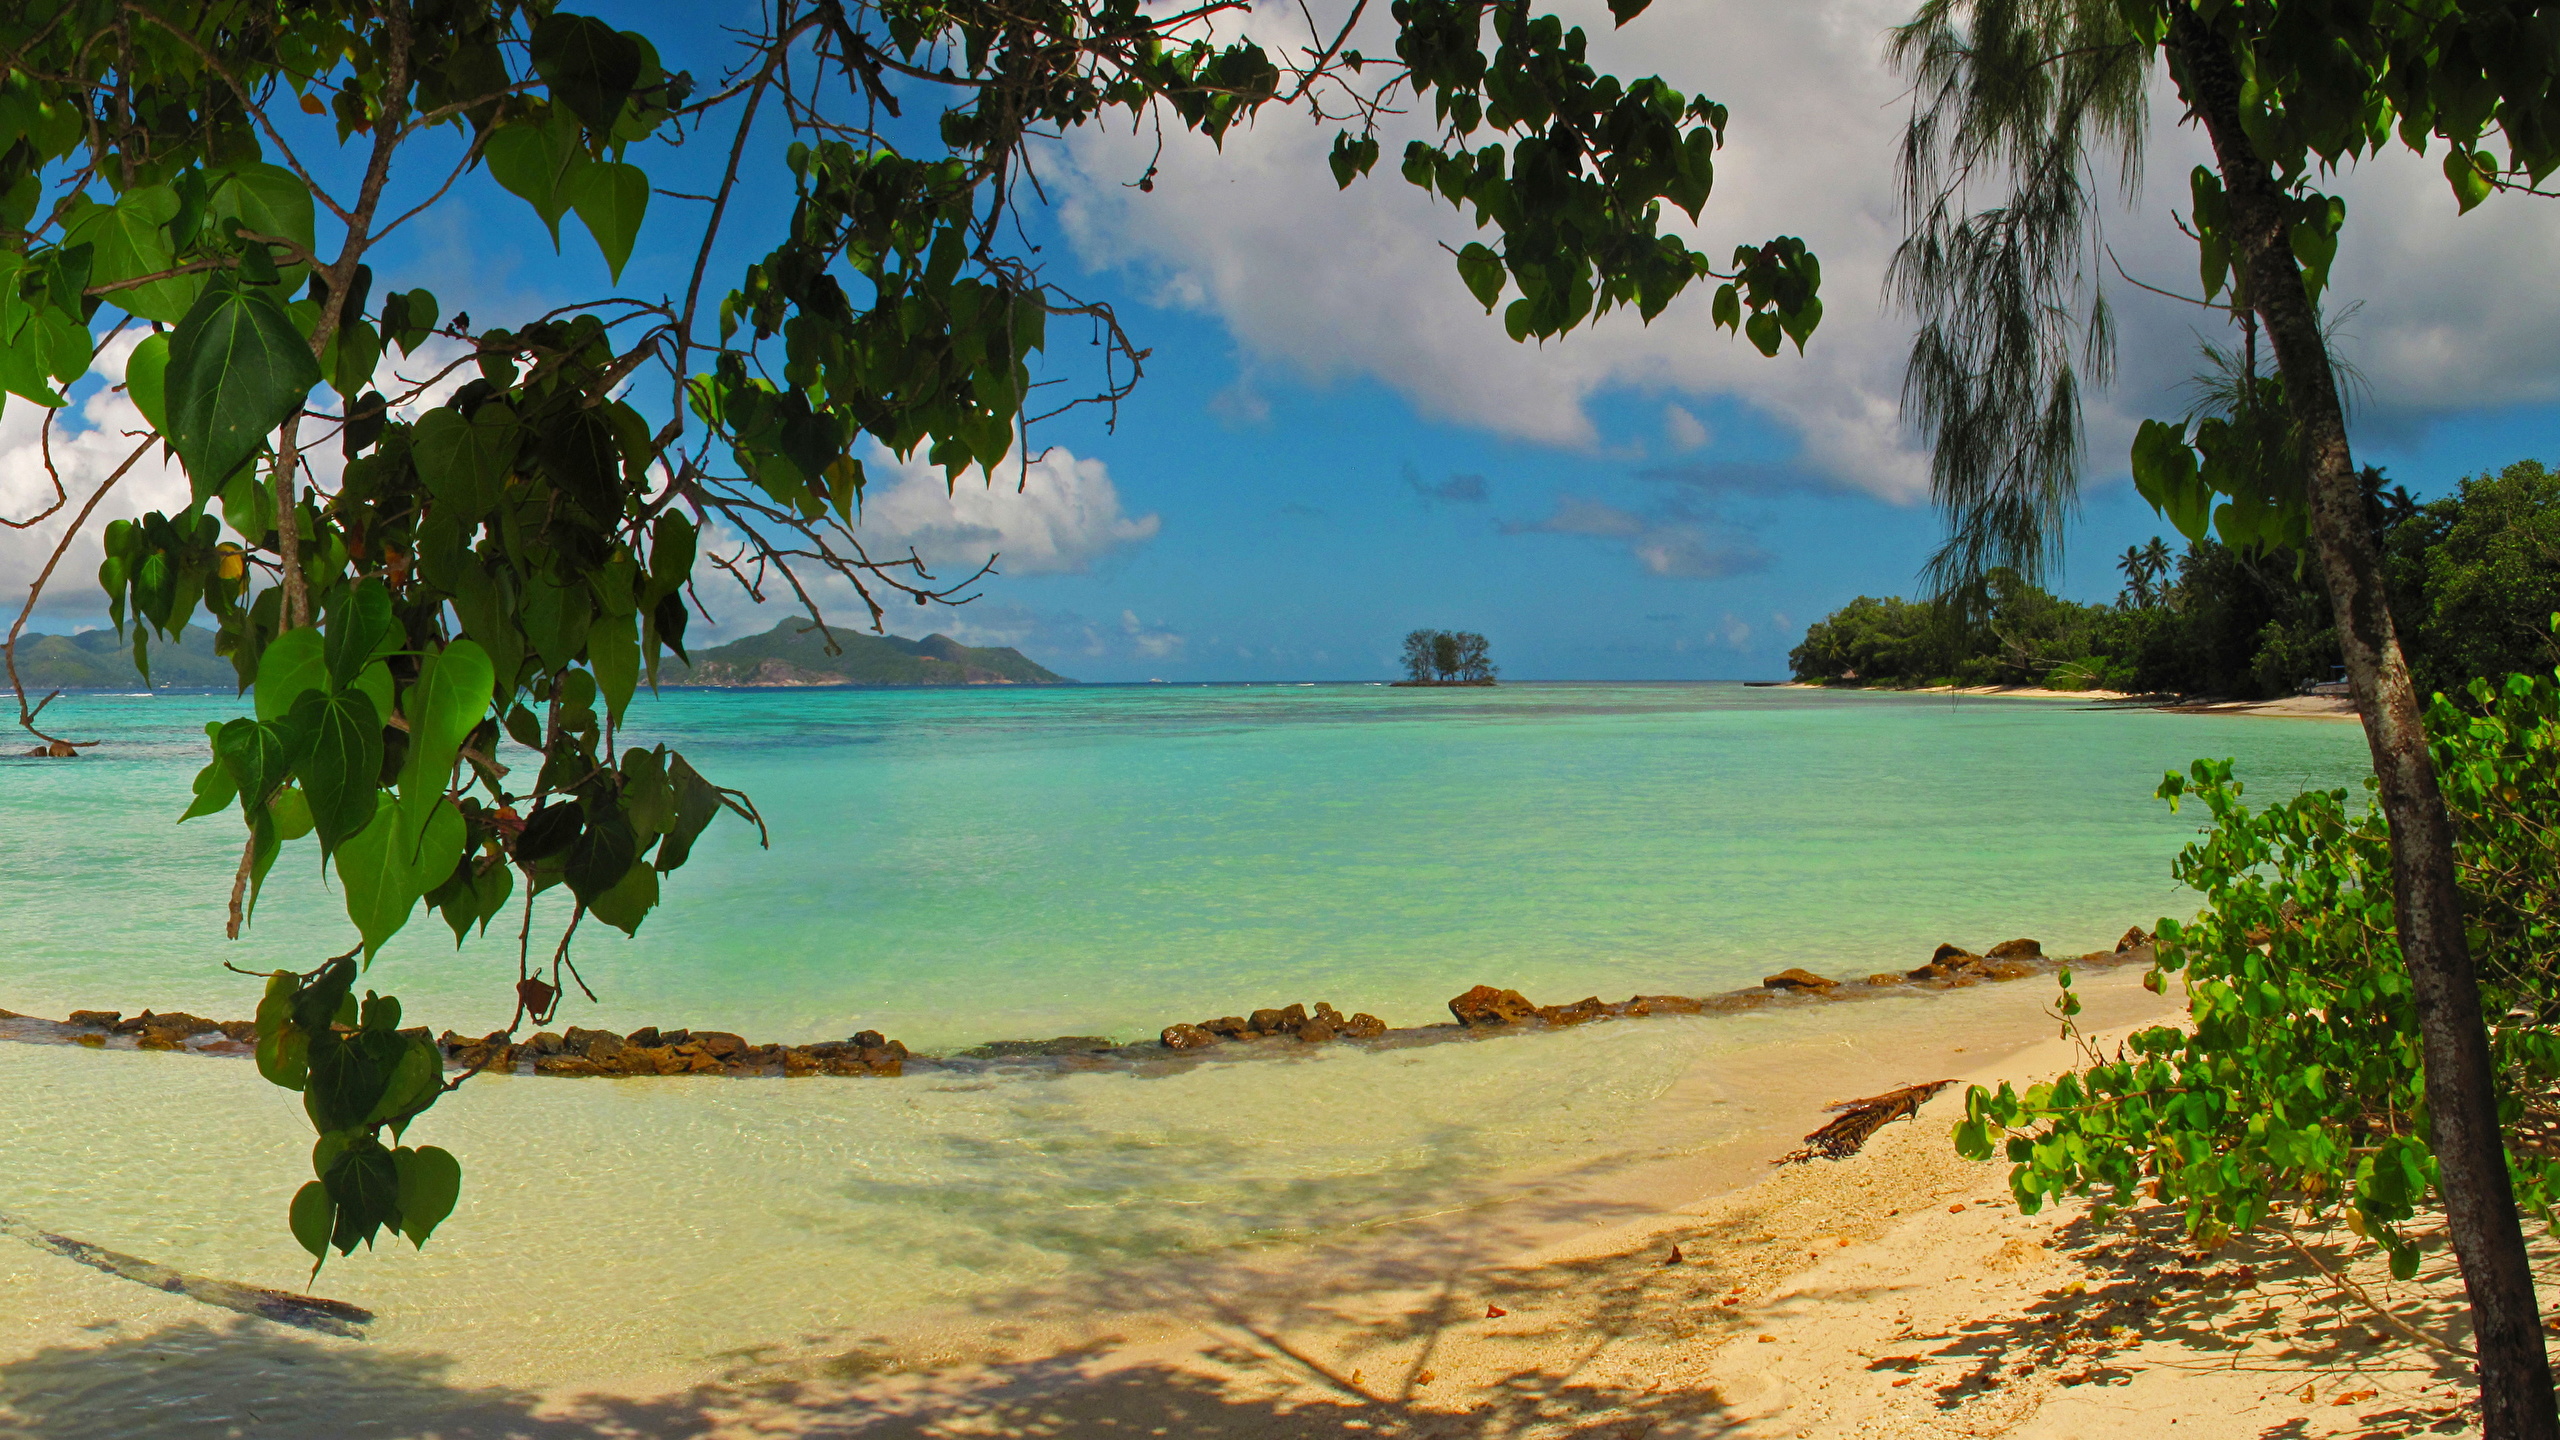 壁紙 2560x1440 風景写真 海 Seychelles La Digue ビーチ 木の葉 自然 ダウンロード 写真